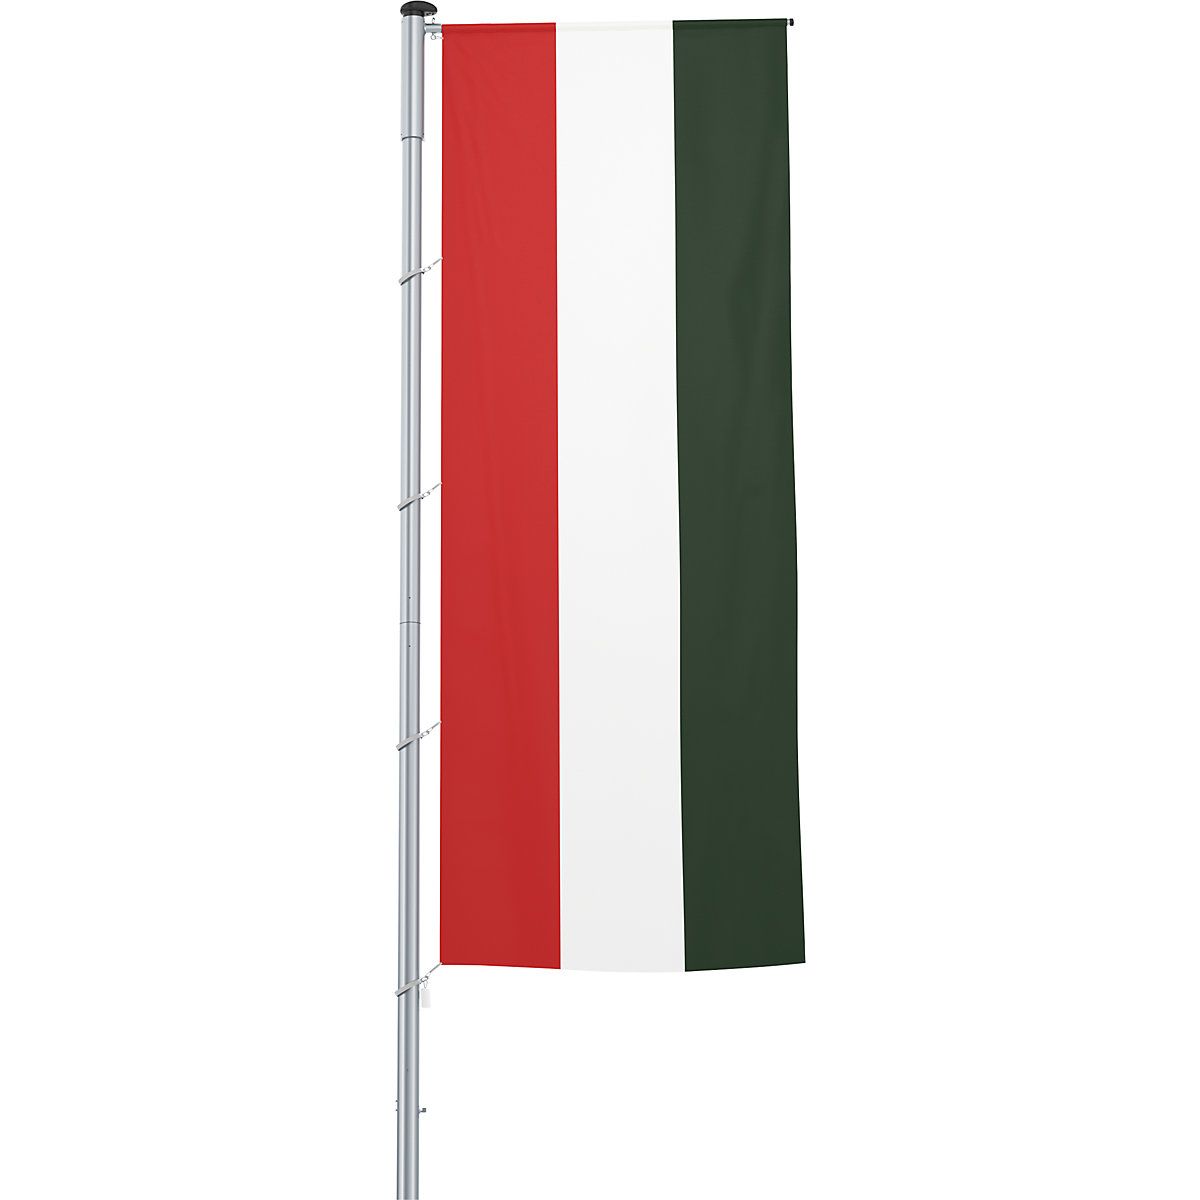 Mannus – Bandera con pluma/bandera del país, formato 1,2 x 3 m, Hungría